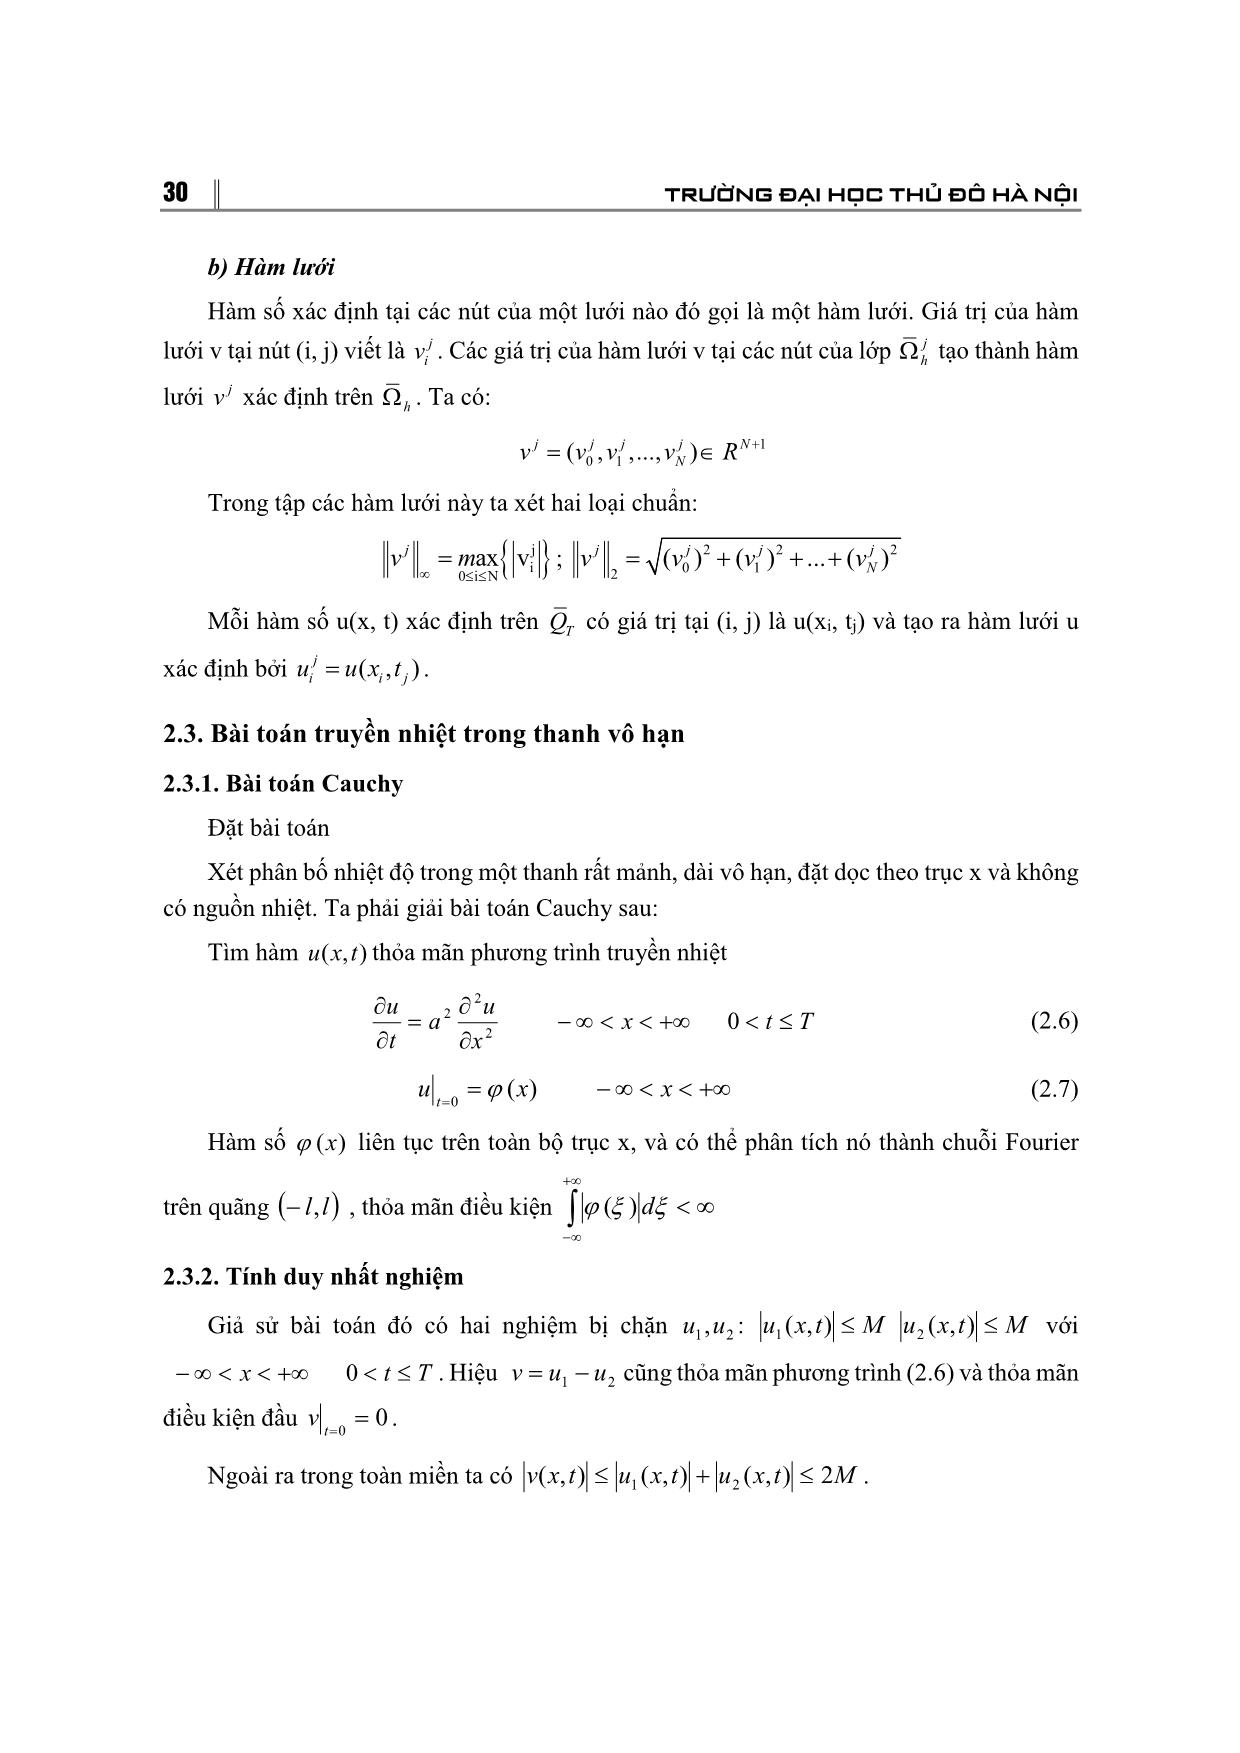 Phương pháp số giải một số bài toán biên trong miền vô hạn trang 5